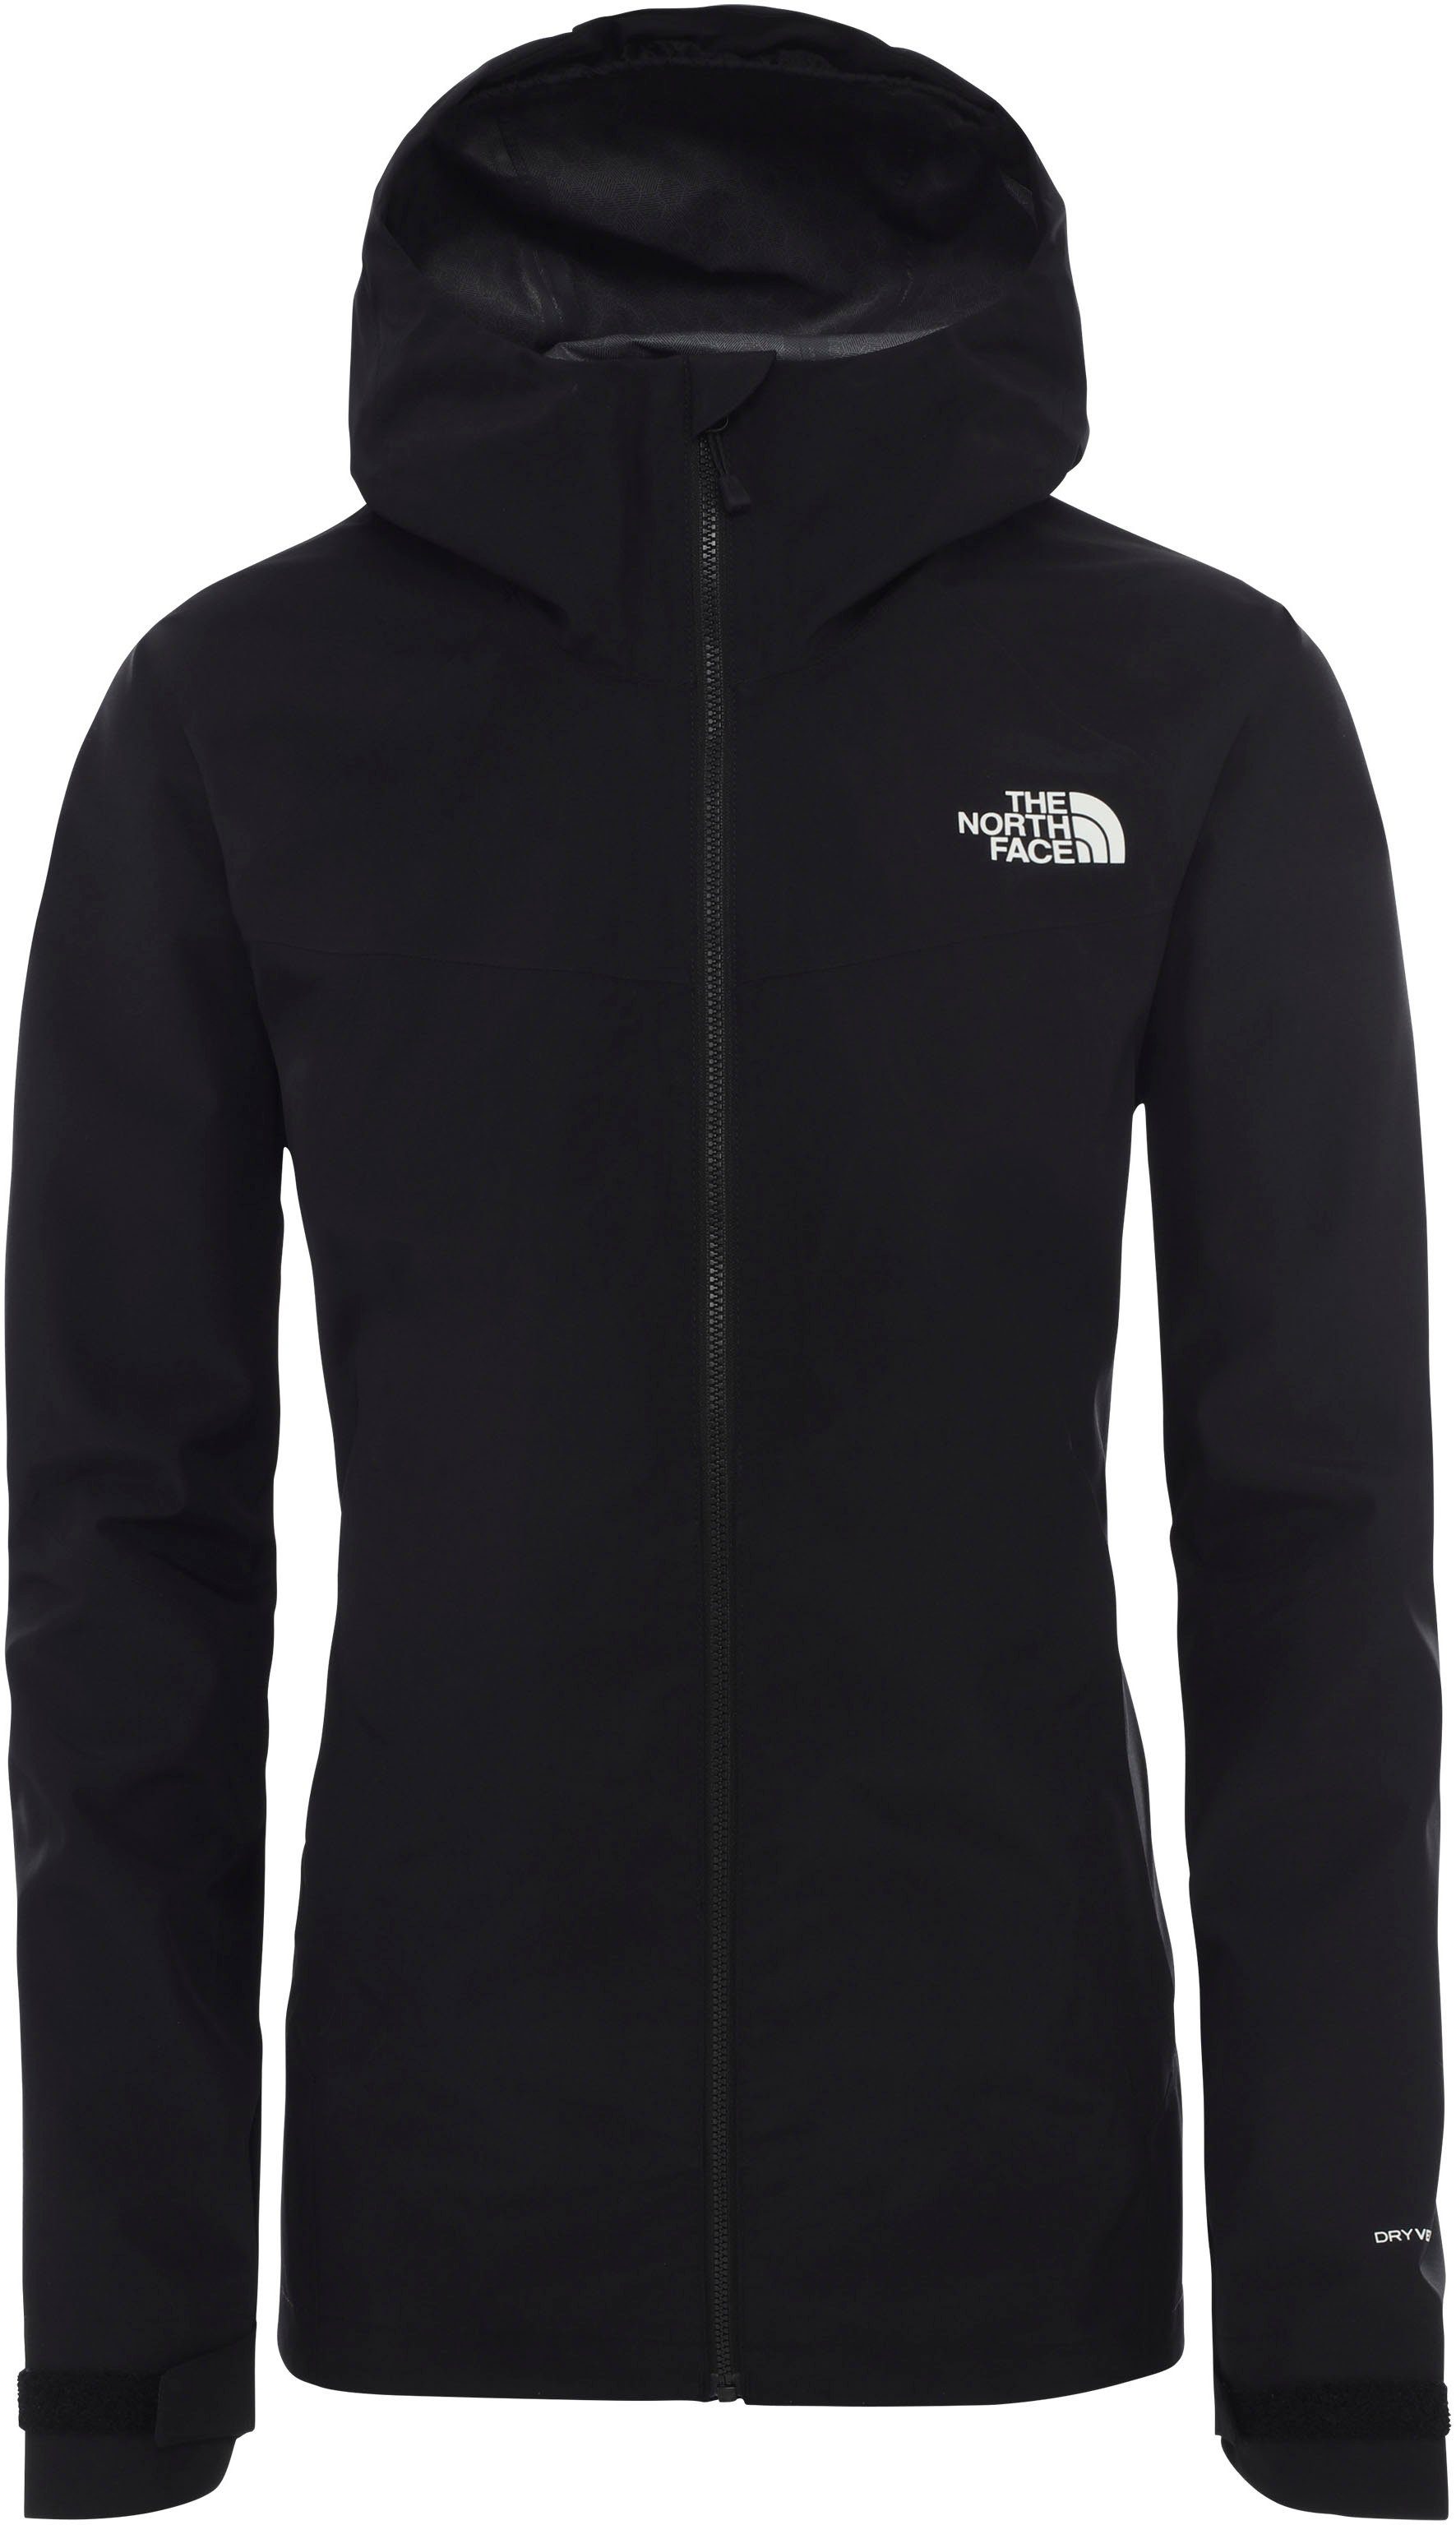 The North Face Jacken online kaufen | OTTO